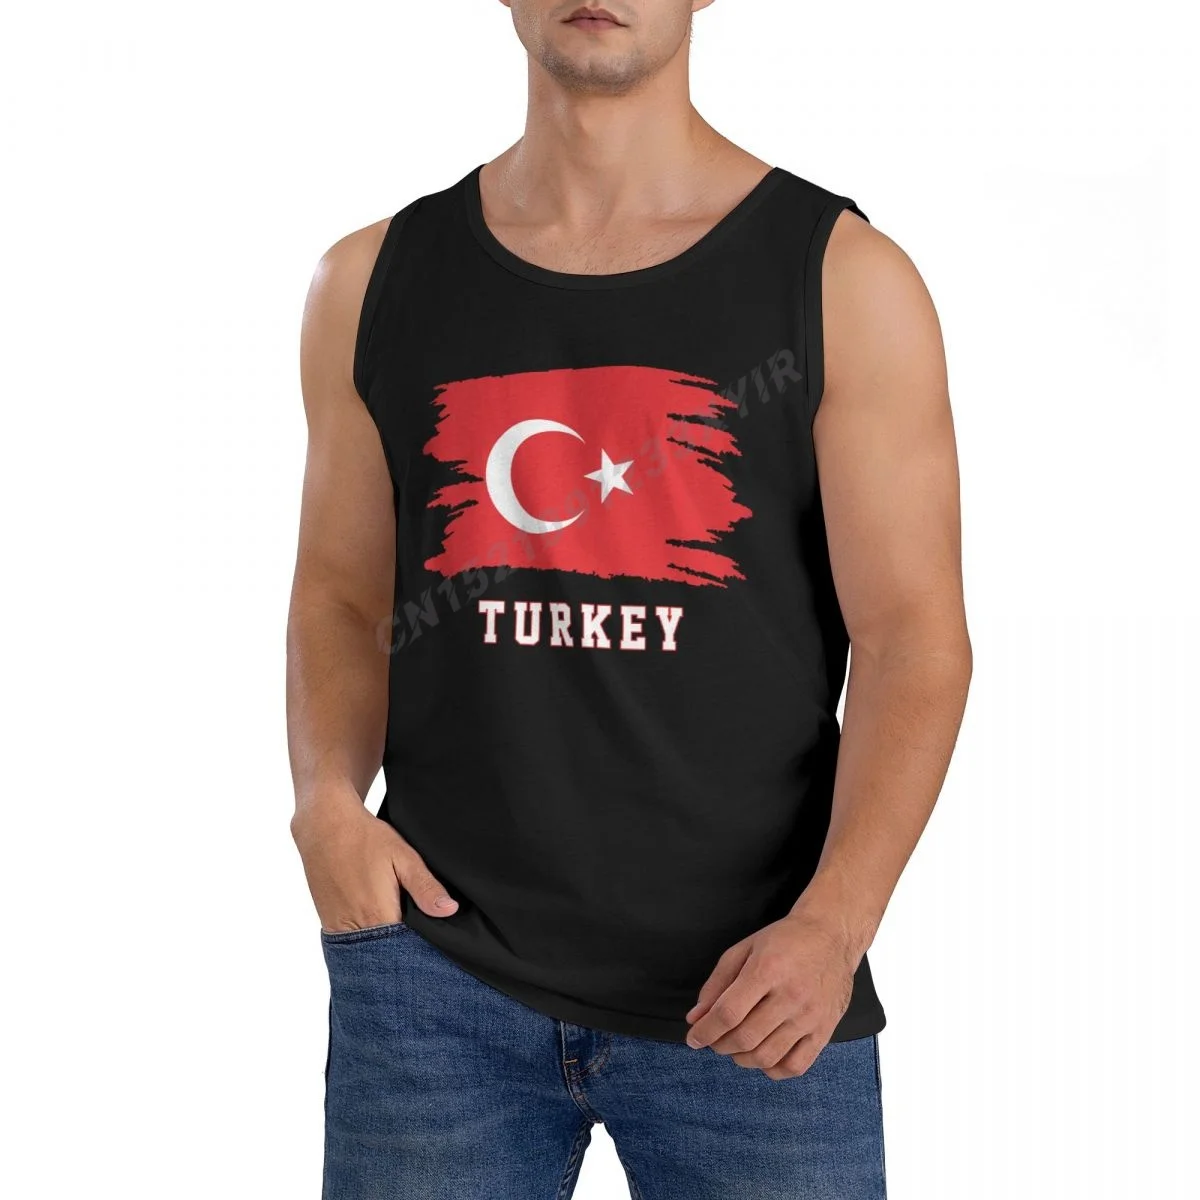 

Men Tank Top Turkey Flag Cool Turks Fans TankTop Men's Shirt 100% Cotton S-3XL O-neck Sleeveless Cool Summer